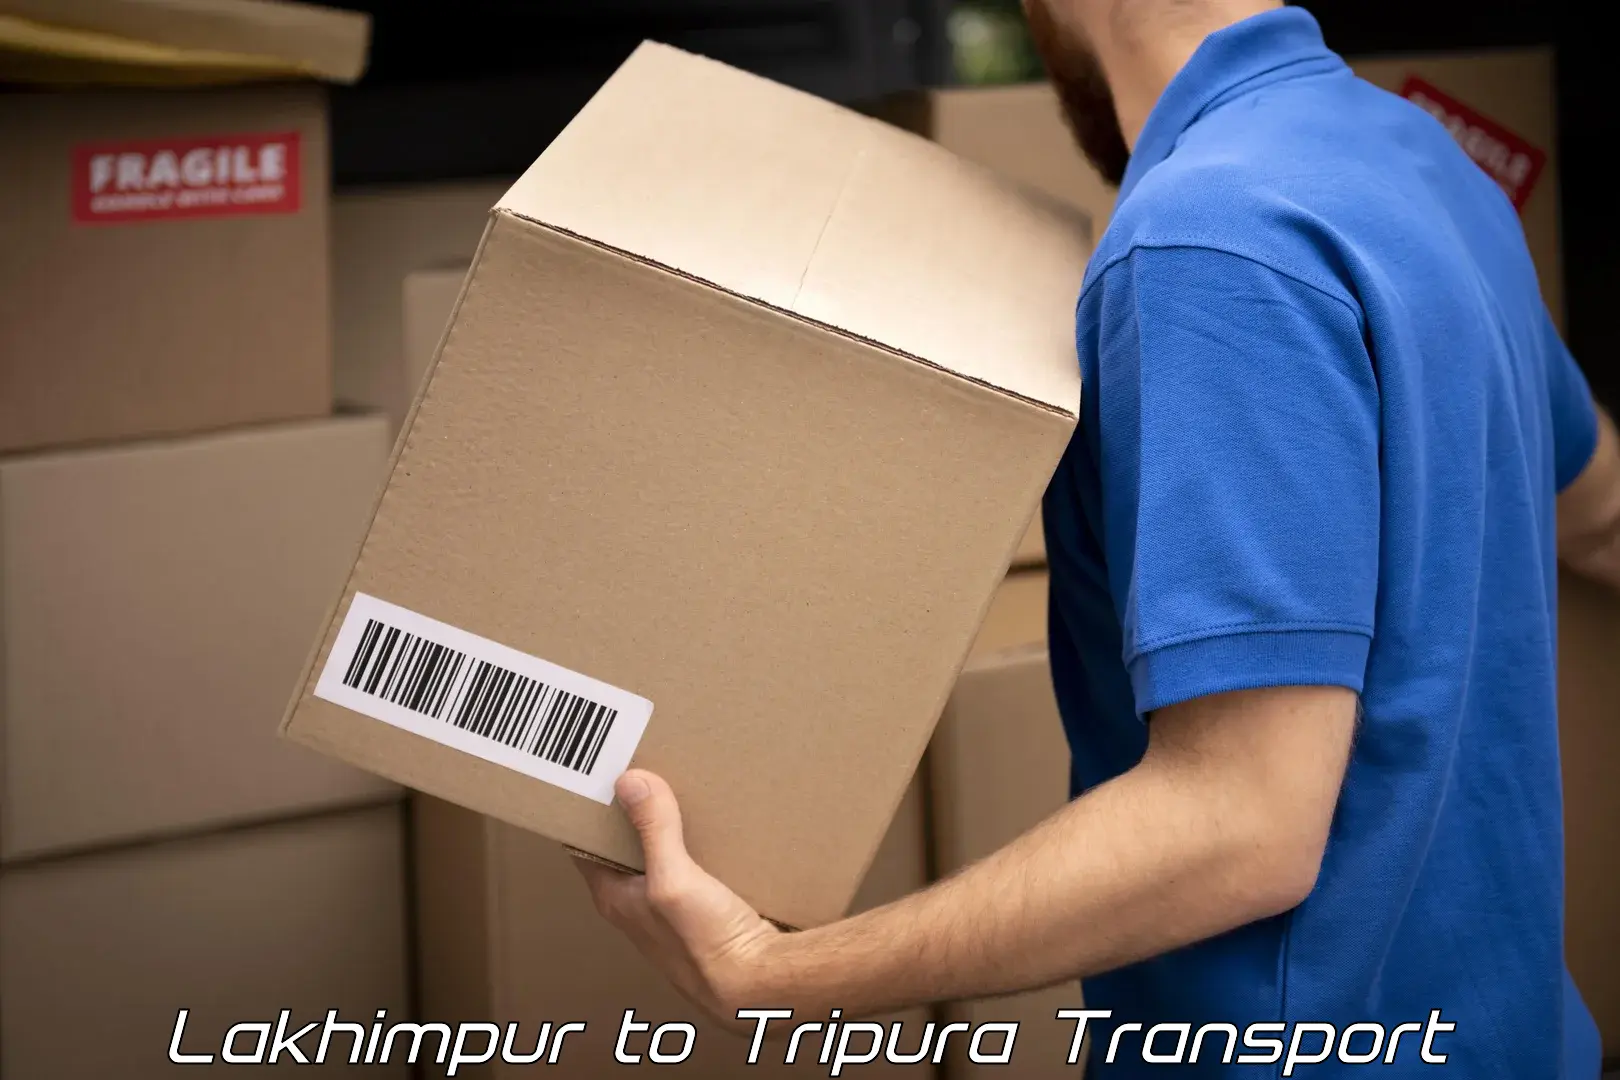 Shipping partner Lakhimpur to Agartala